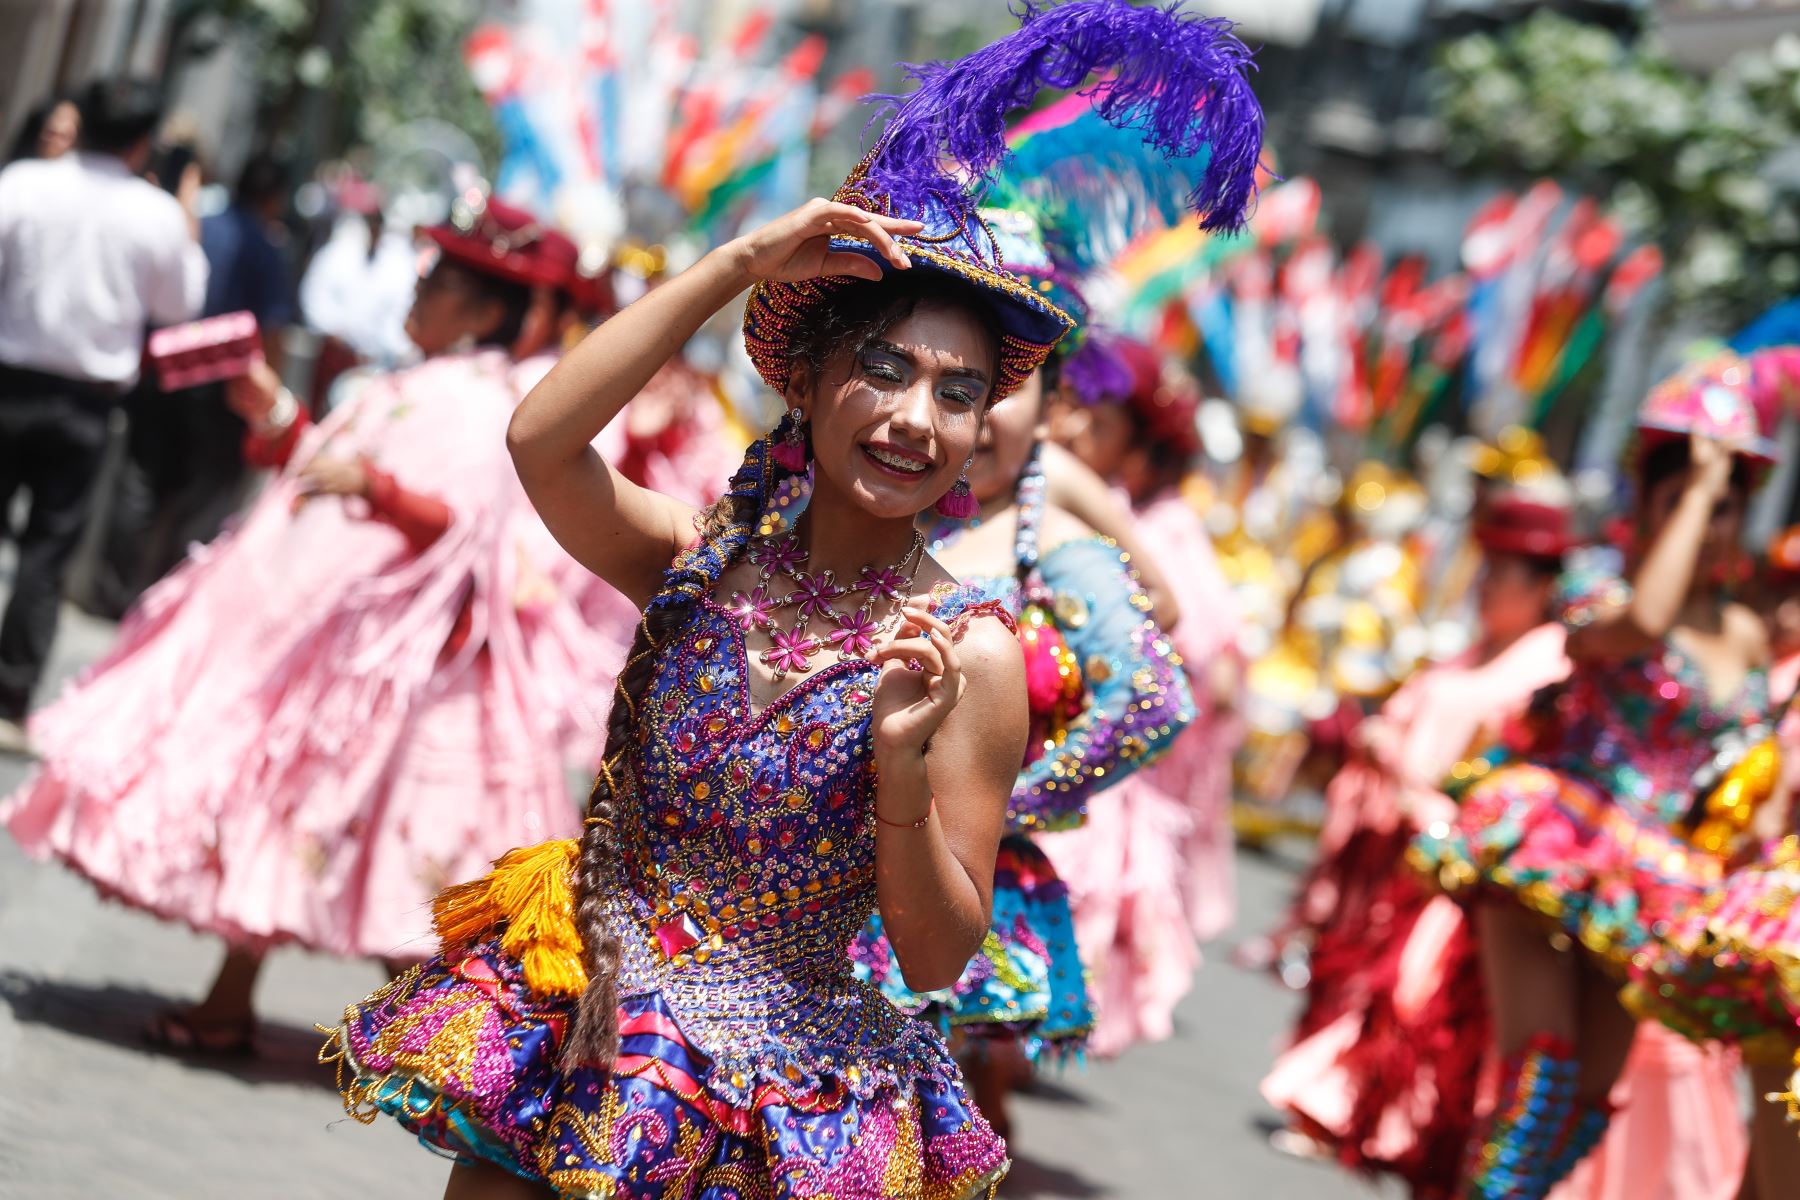 Uno de los hitos más relevantes de la festividad en honor de la Virgen de la Candelaria es la Octava, en la que se desarrollan ritos religiosos donde se venera con profunda fe y devoción a la patrona de Puno, y también un fastuoso despliegue de conjuntos de danzas y música que evidencian por qué se considera a esta región altiplánica como la capital del folclor peruano. ANDINA/Renato Pajuelo